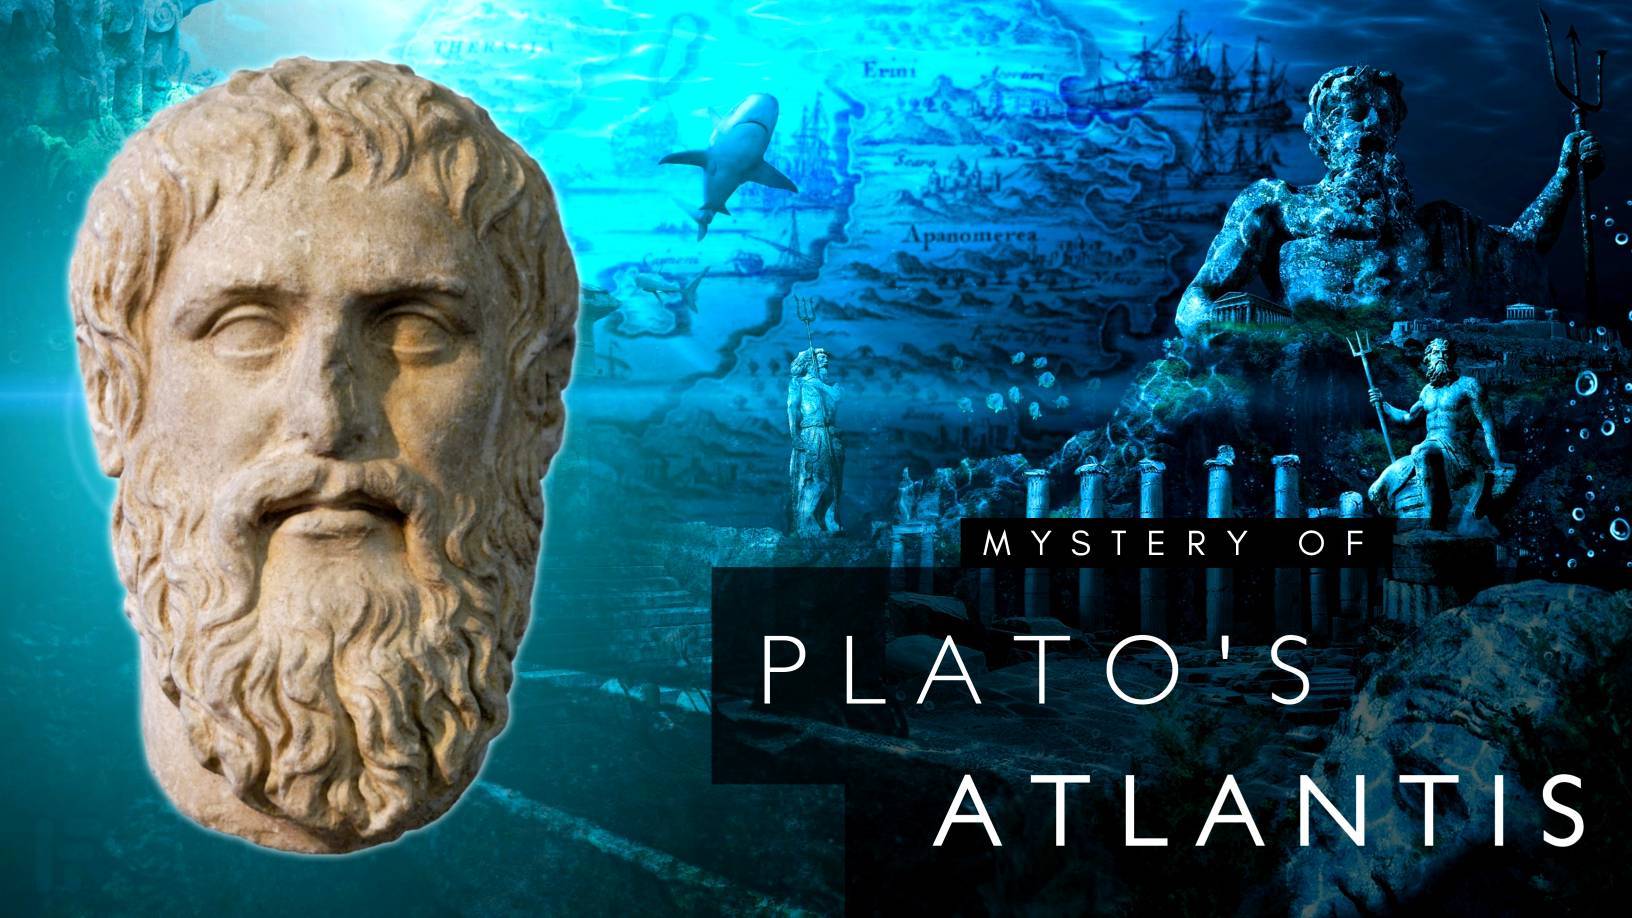 Atlantis Plato